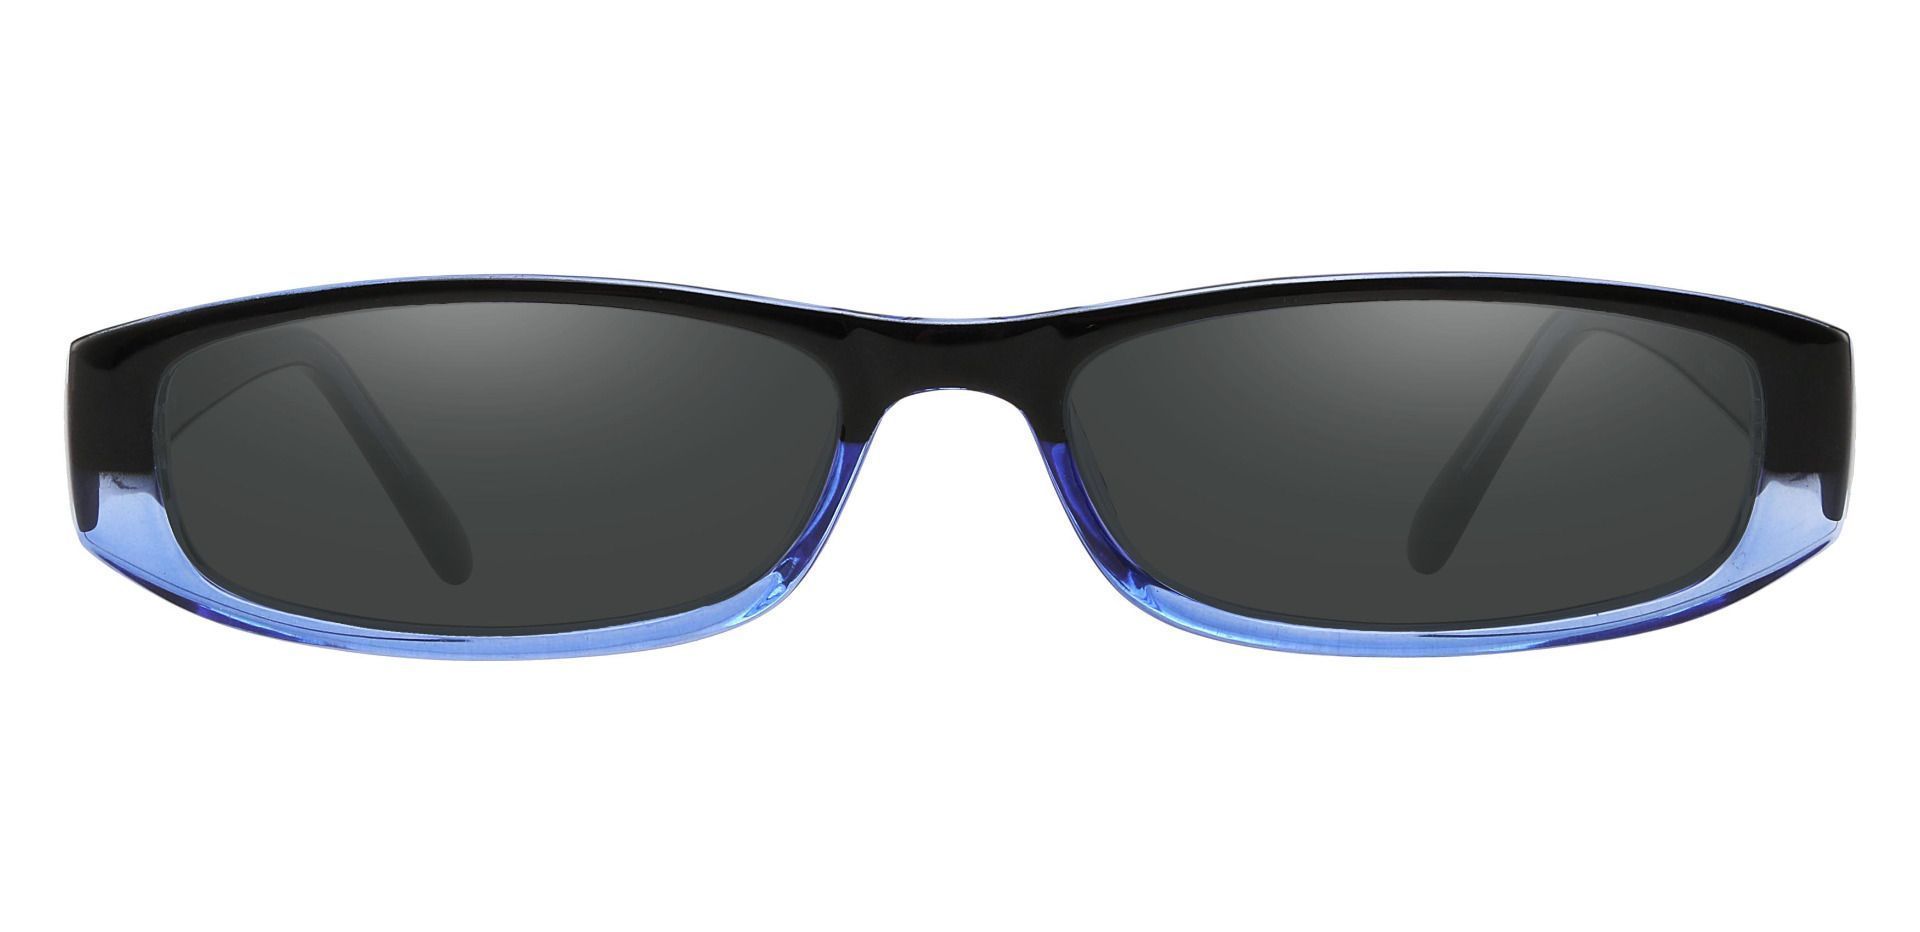 Elgin Rectangle Reading Sunglasses - Blue Frame With Gray Lenses